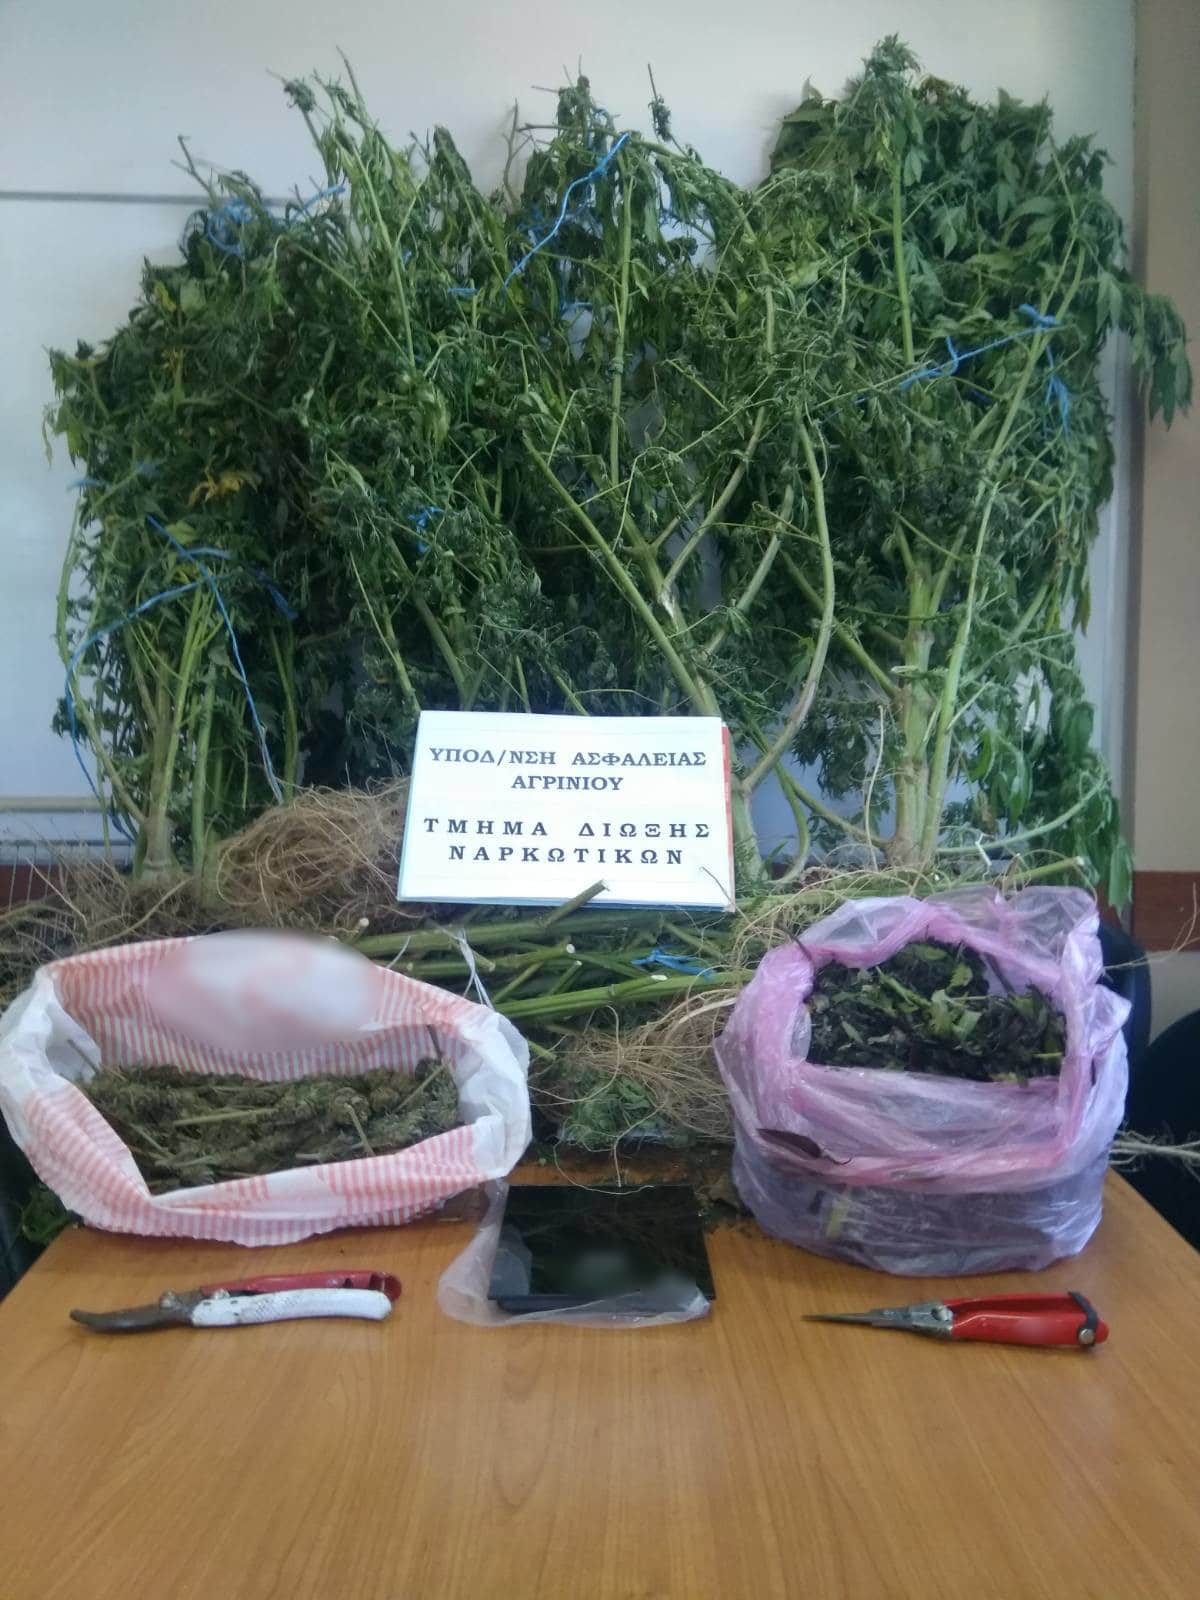 Αιτωλοακαρνανία: Συνελήφθη καλλιεργητής ναρκωτικών – Εκριζώθηκαν δενδρύλλια και κατασχέθηκαν ουσίες